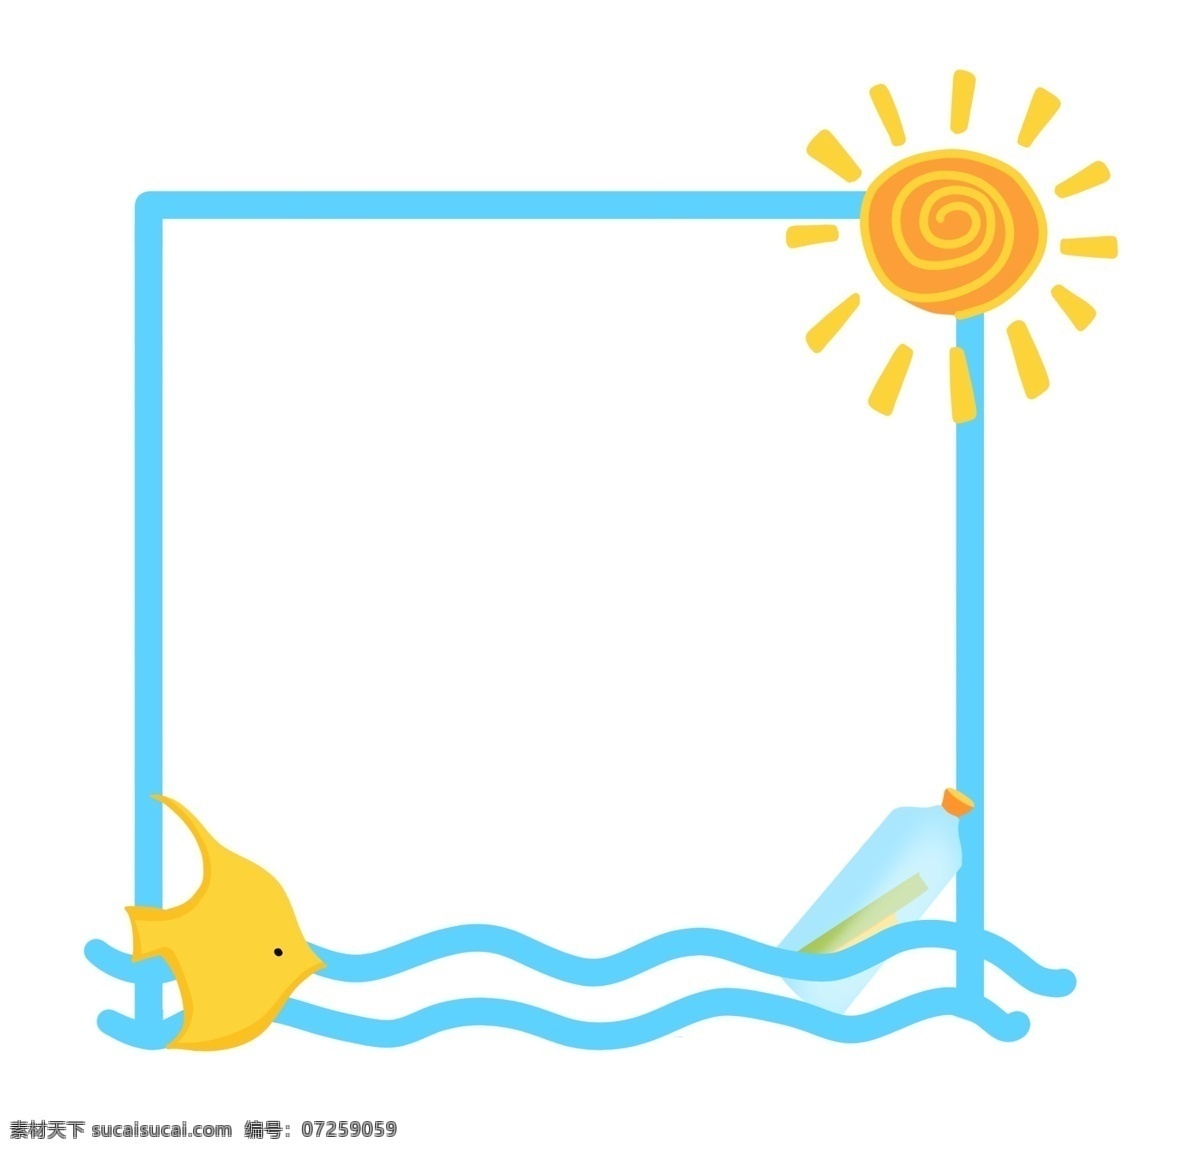 黄色 太阳 装饰 边框 蓝色边框 黄色太阳装饰 黄色小鱼 海浪边框 可爱的边框 小动物边框 卡通边框 边框装饰